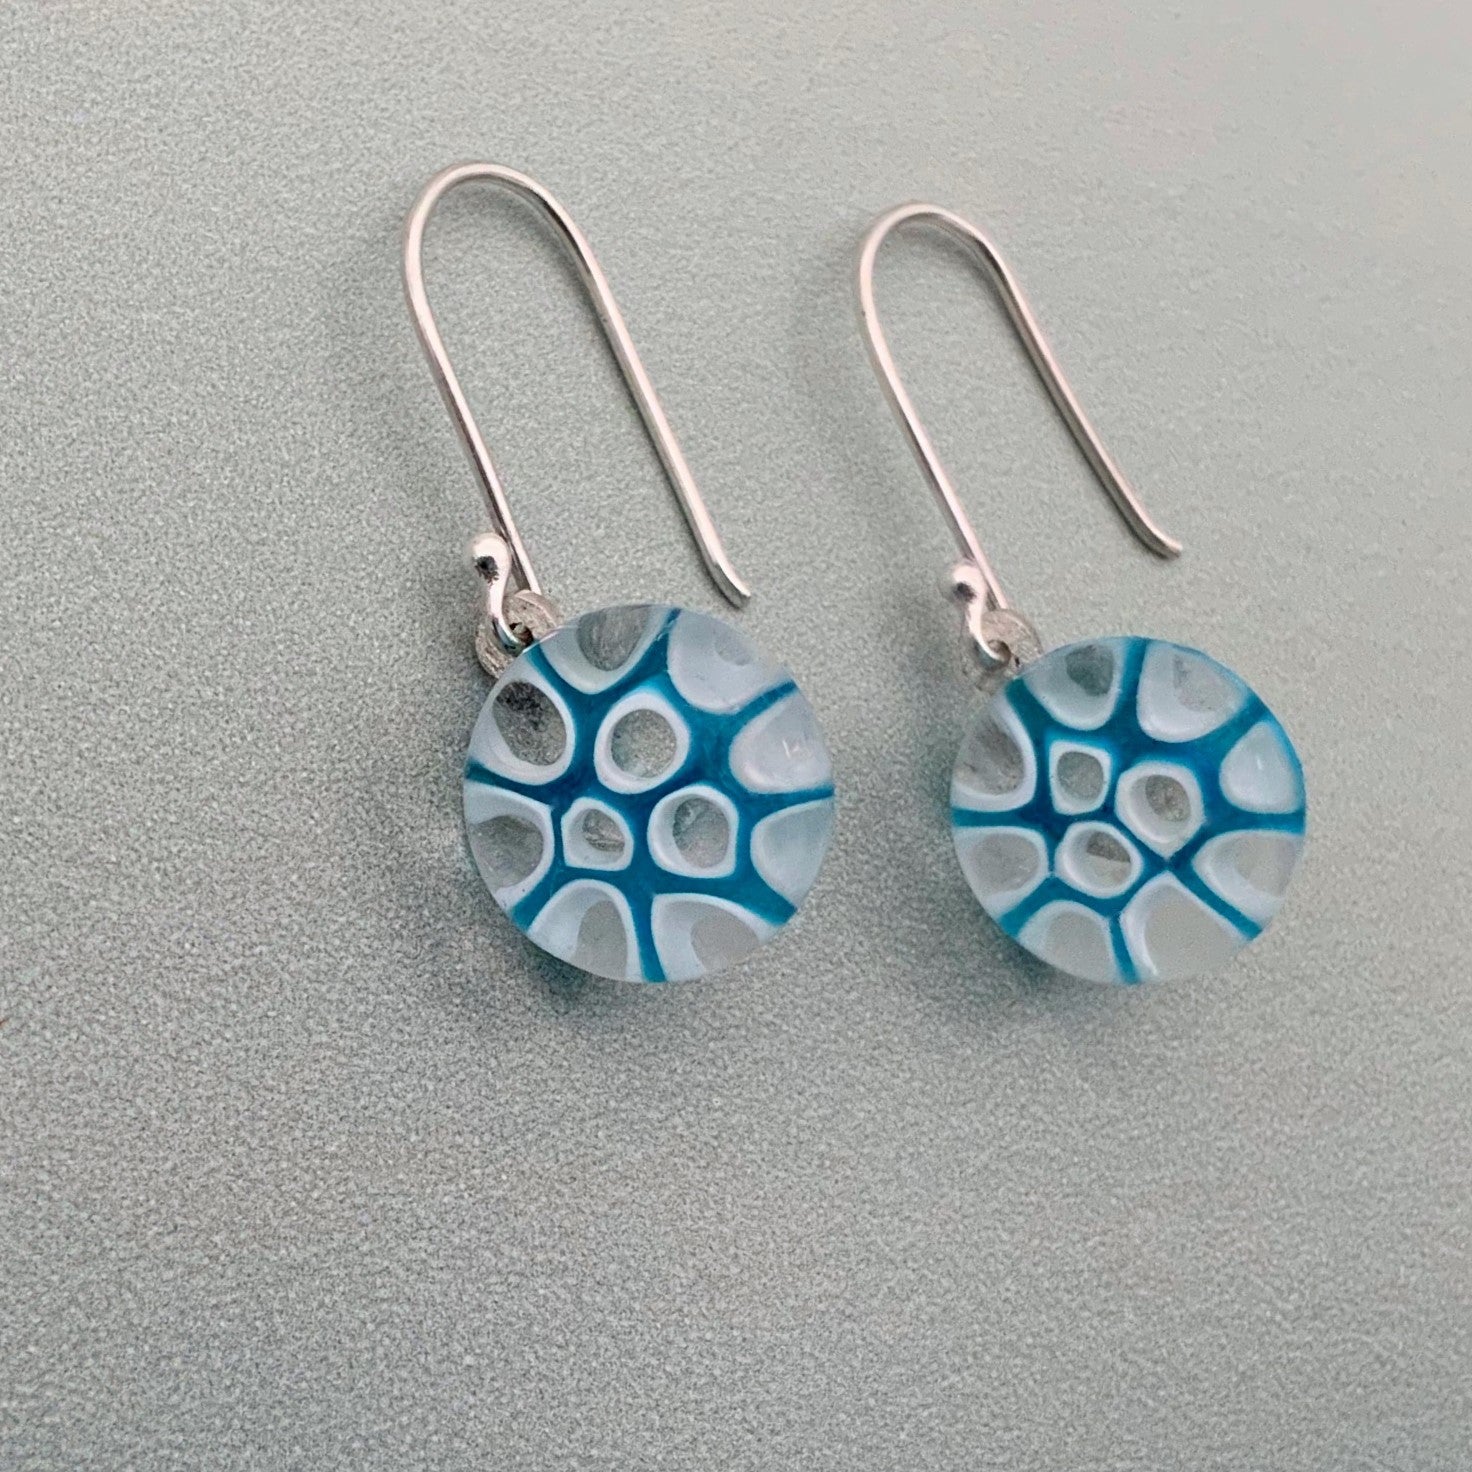 Murrini glass turquoise and white dangle earrings